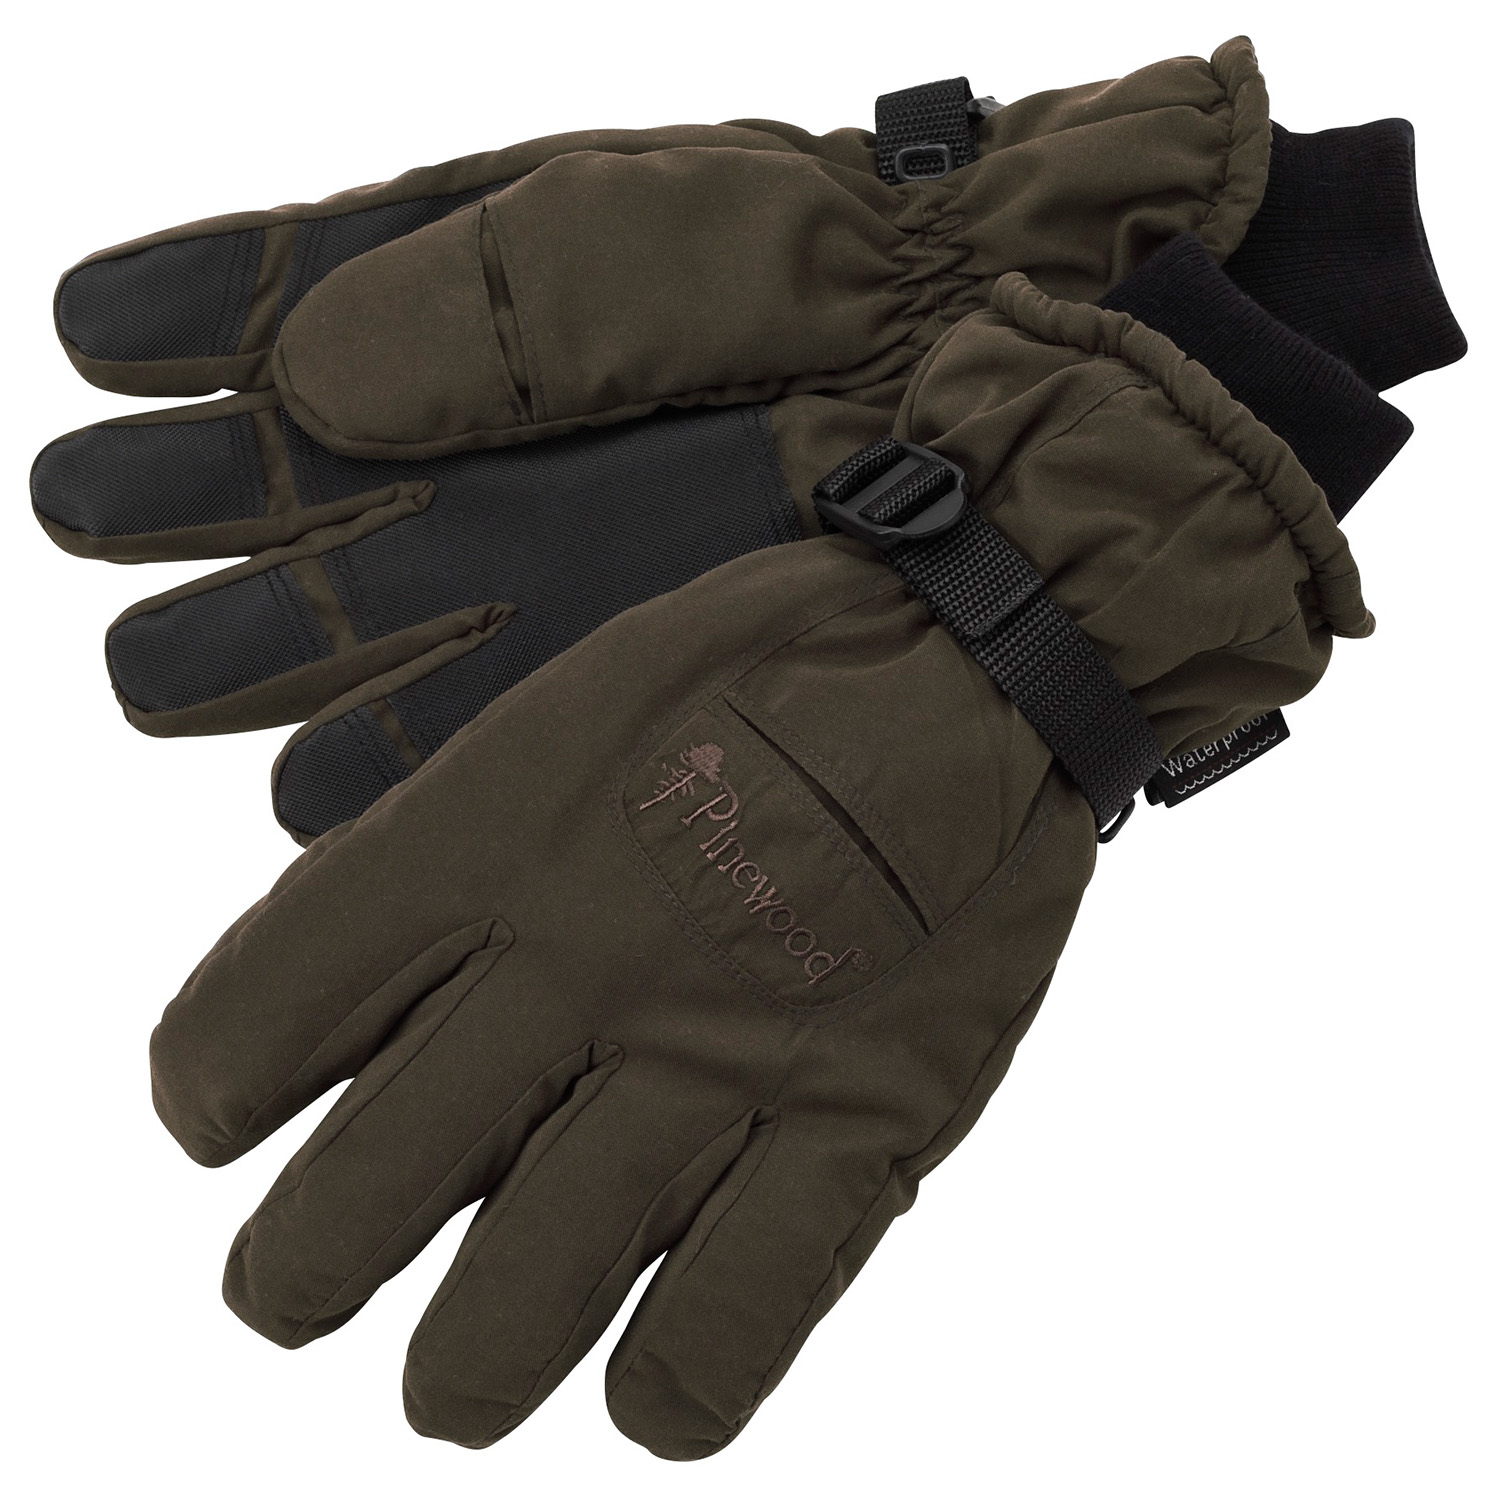  Pinewood Winterhandschoen met membraan (Suede Bruin) - Handschoenen